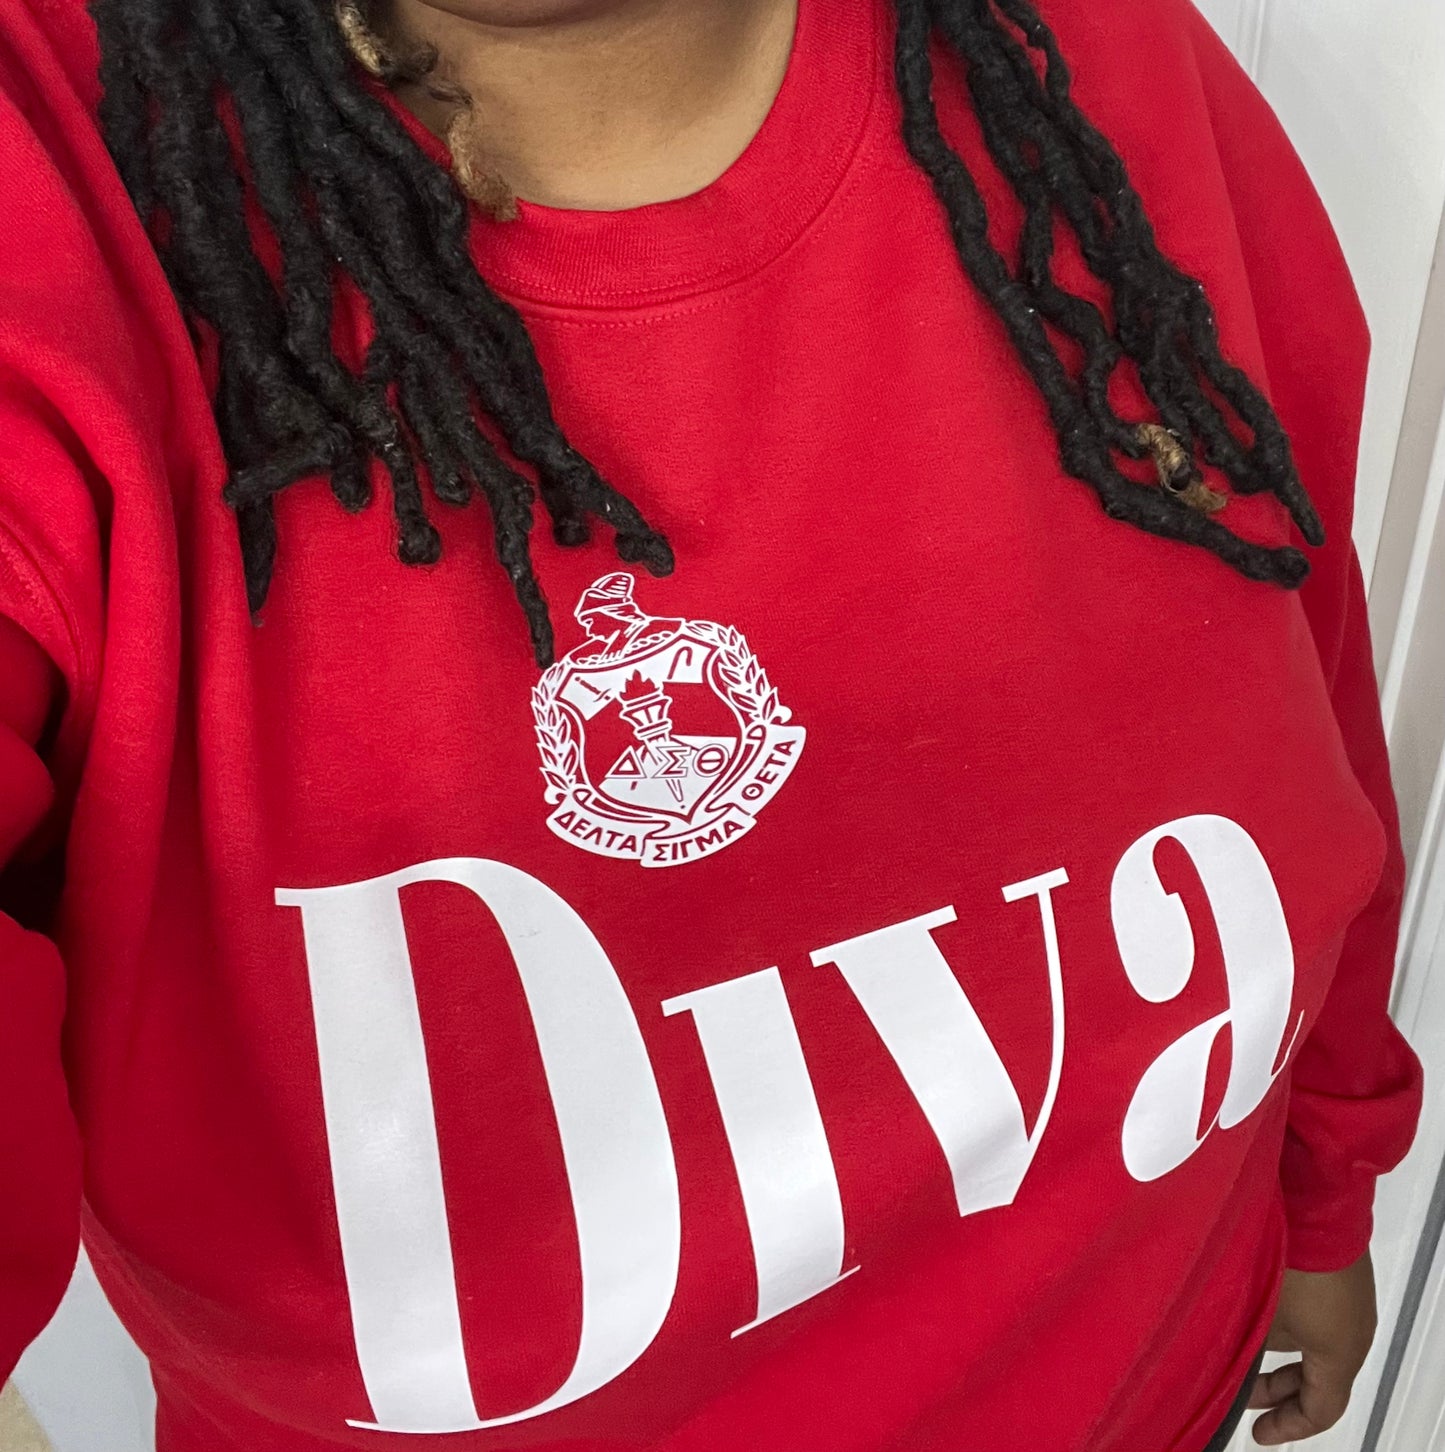 (DST) Diva SweatShirt